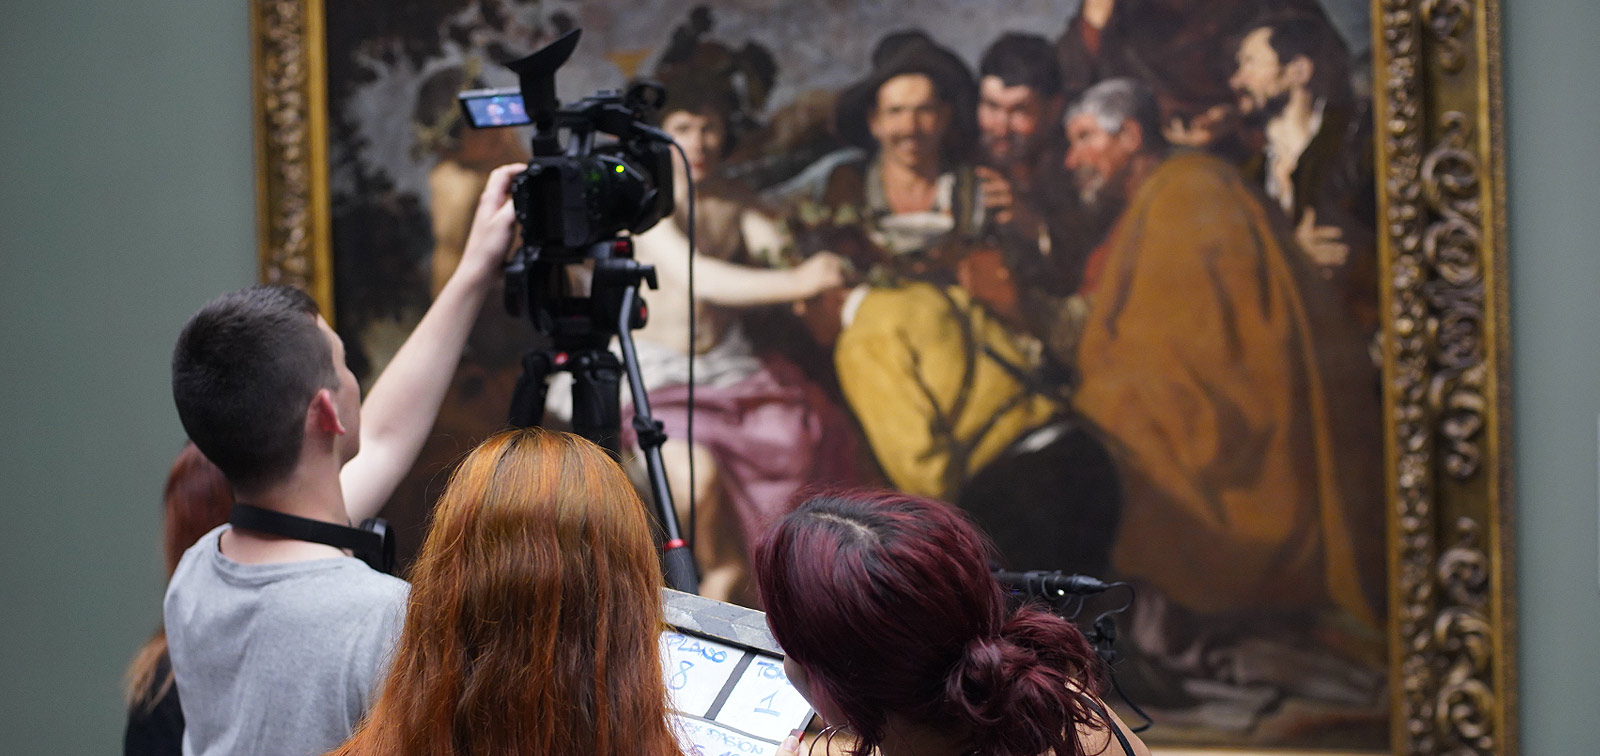 Cine en curso en el Museo del Prado